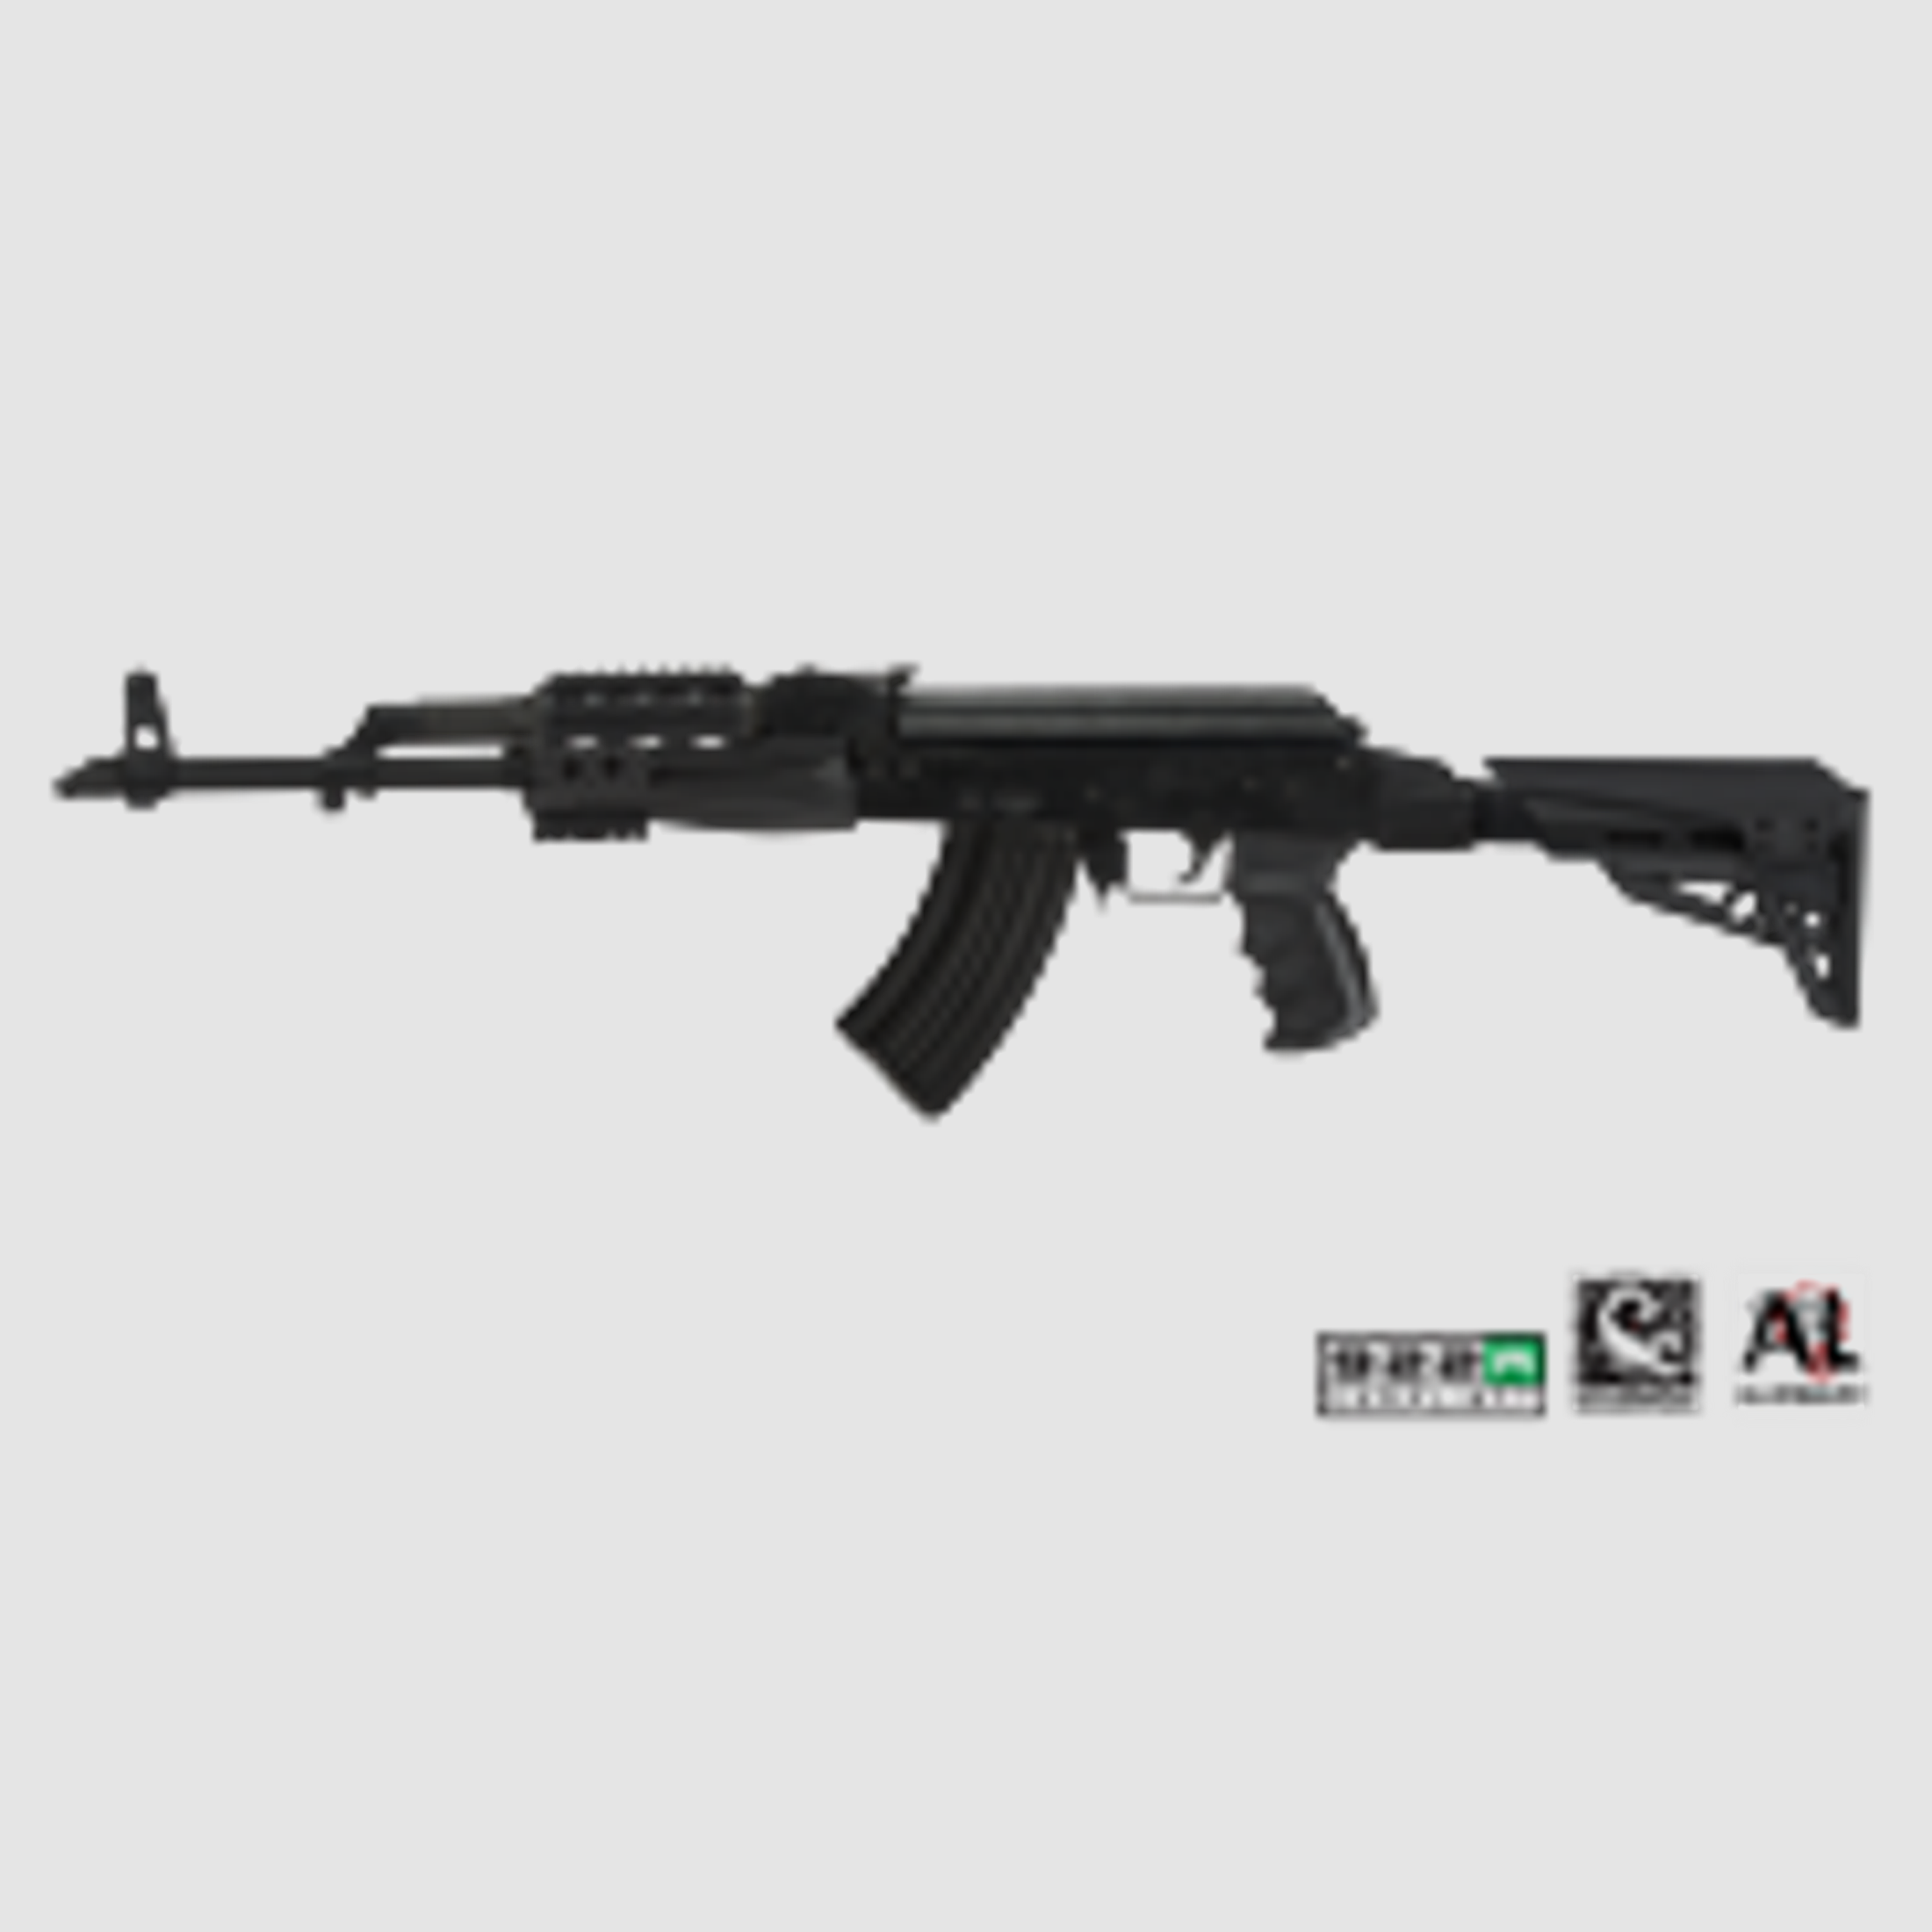 AK-47 / AK-74 Elite complete Package w/ Scorpion Recoil System ATI TactLite